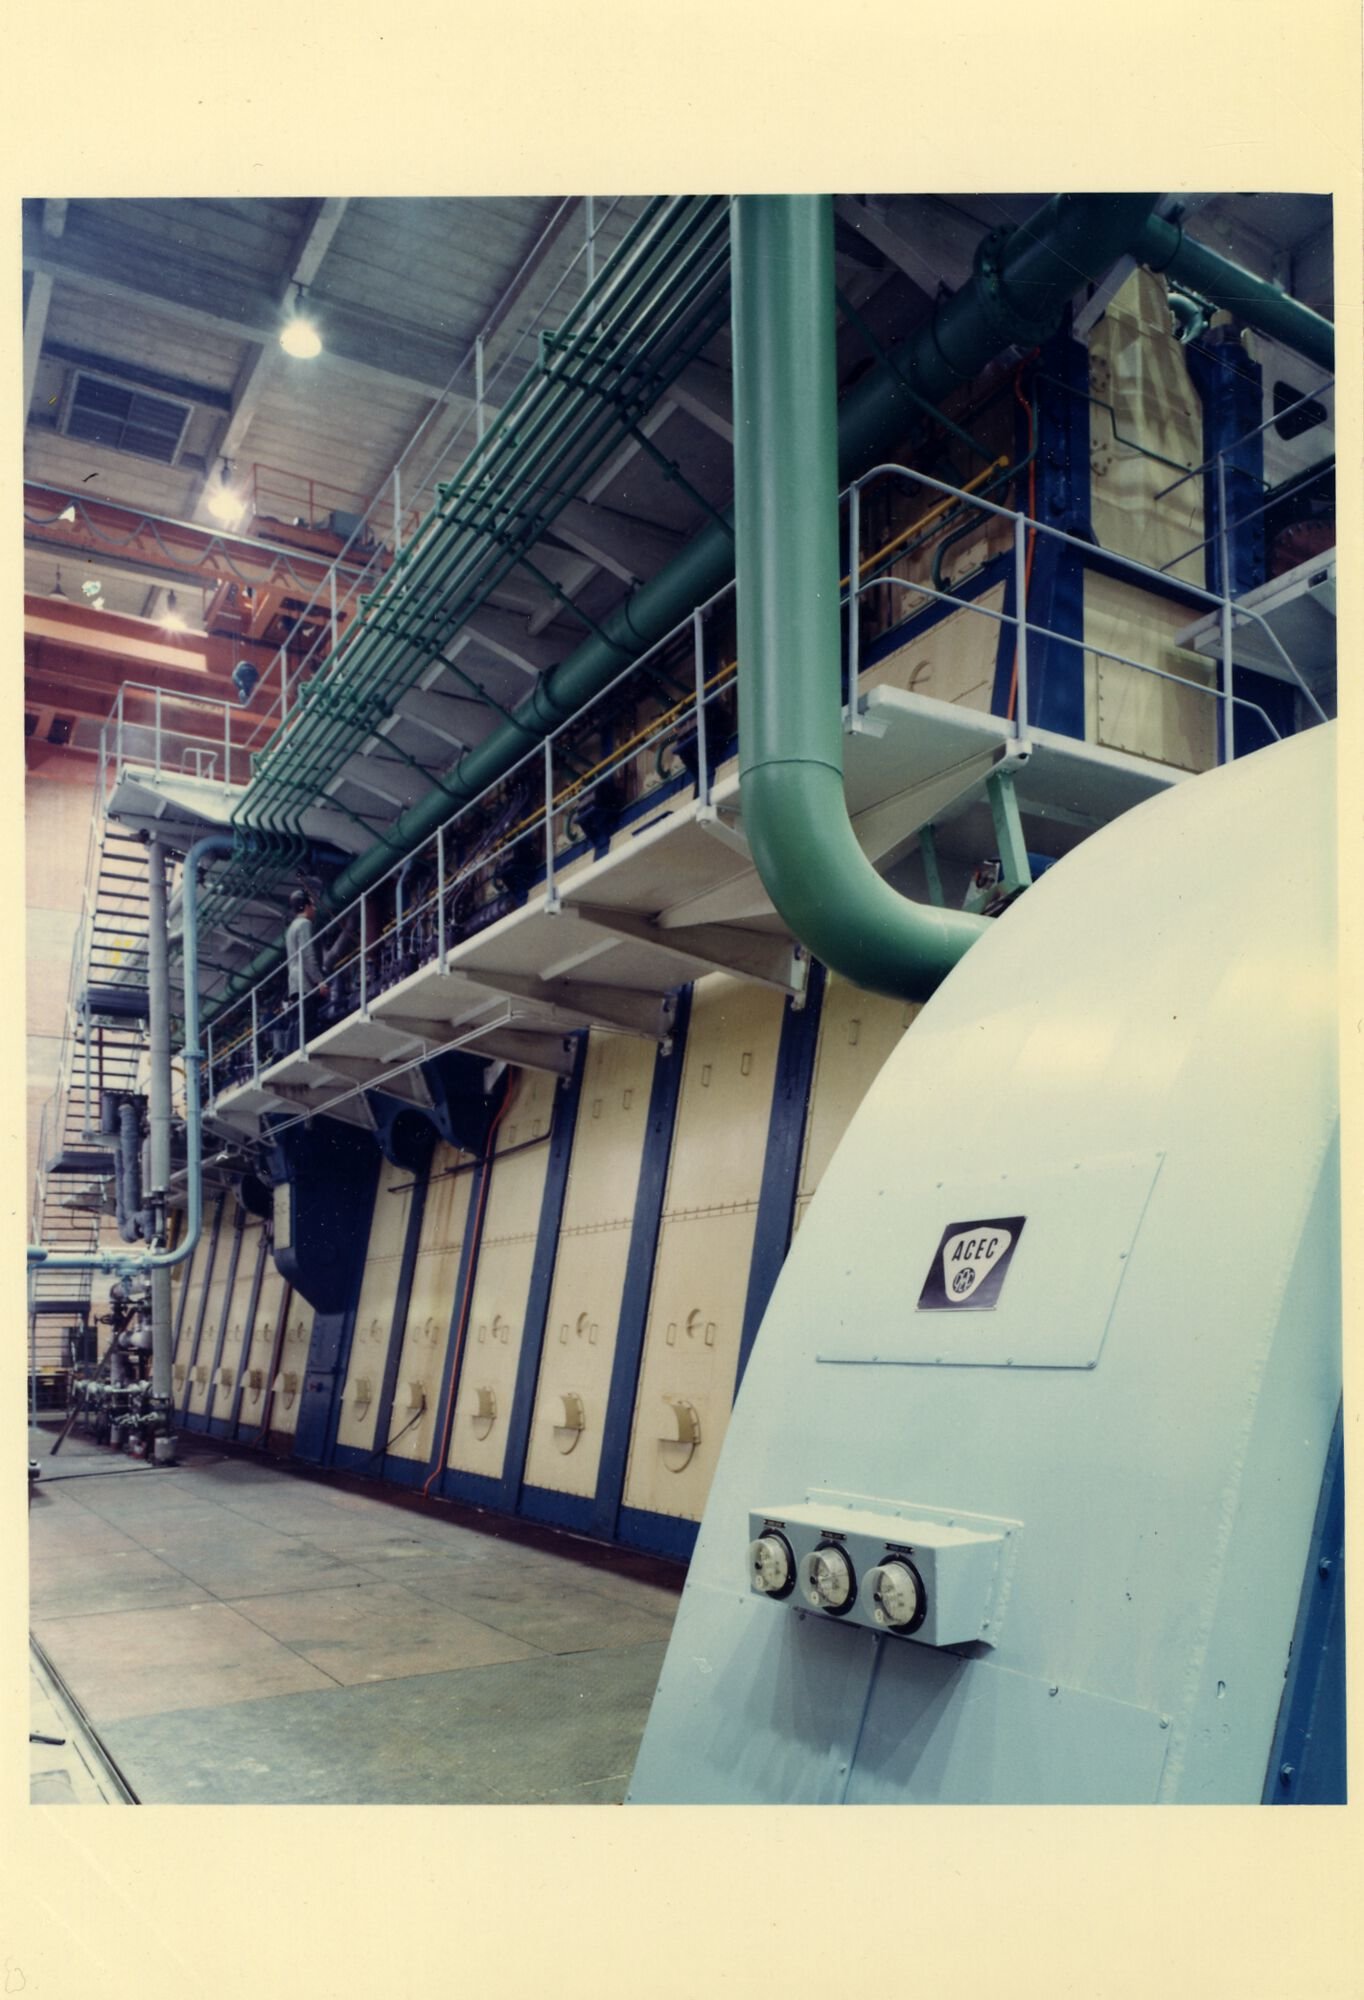 Machinezaal van de stedelijke elektriciteitscentrale Ham in Gent